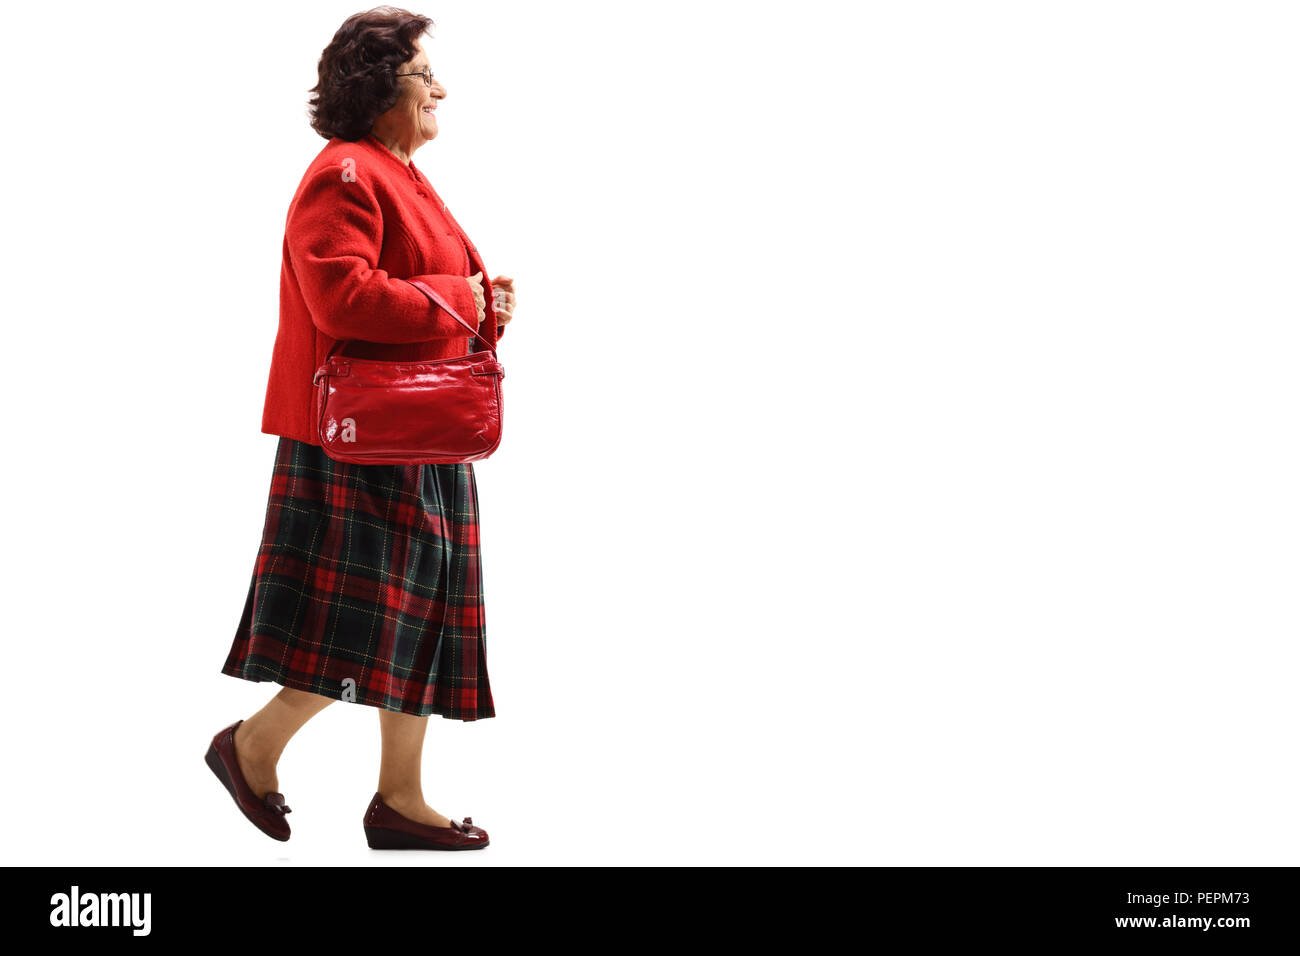 Profil complet tiré d'un senior lady walking isolé sur fond blanc Banque D'Images